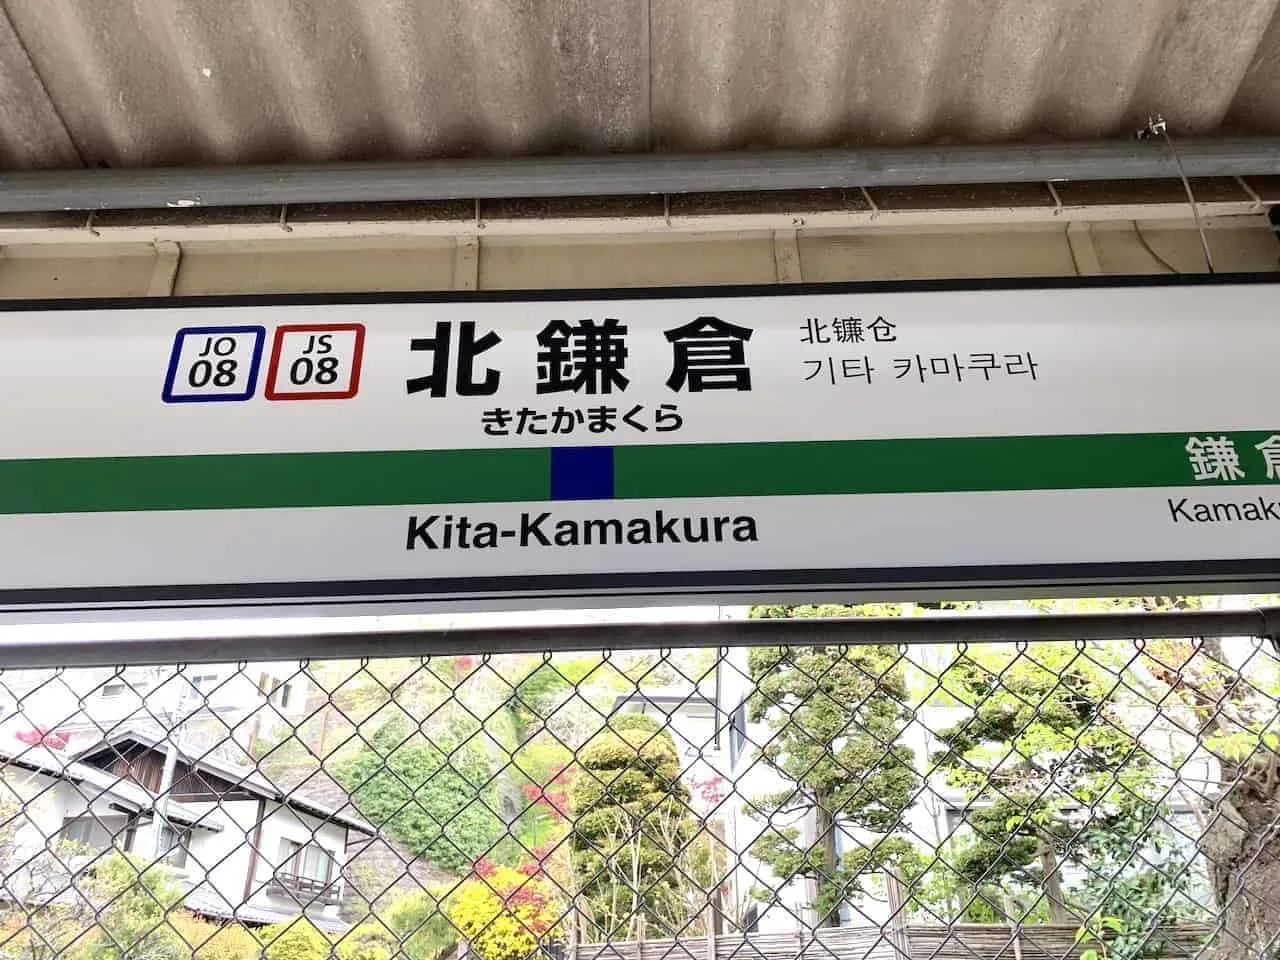 Kita Kamakura Station